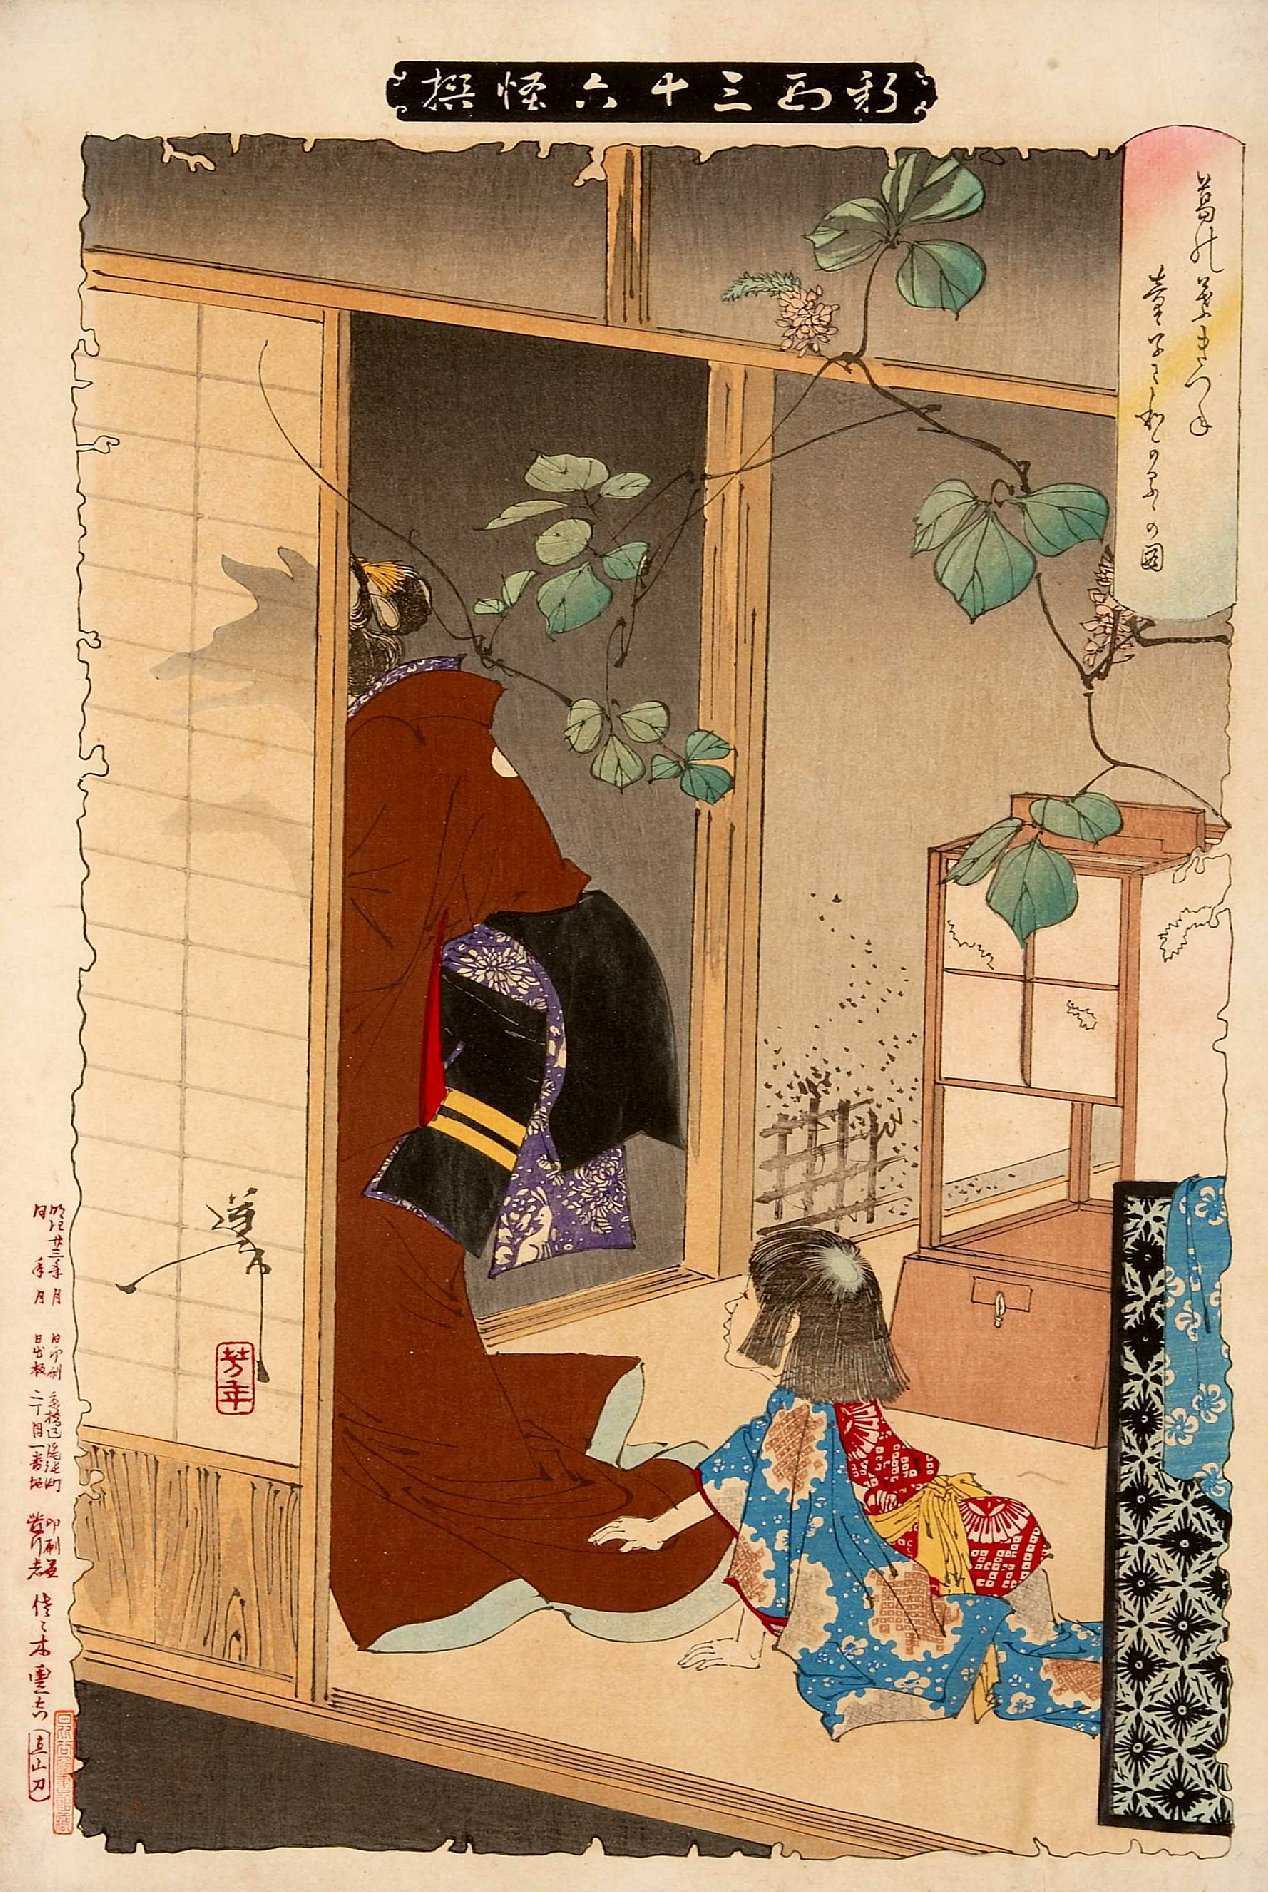 Magiczne stworzenia w kulturze japońskiej #1: kitsune (キツネ) i tanuki (たぬき)